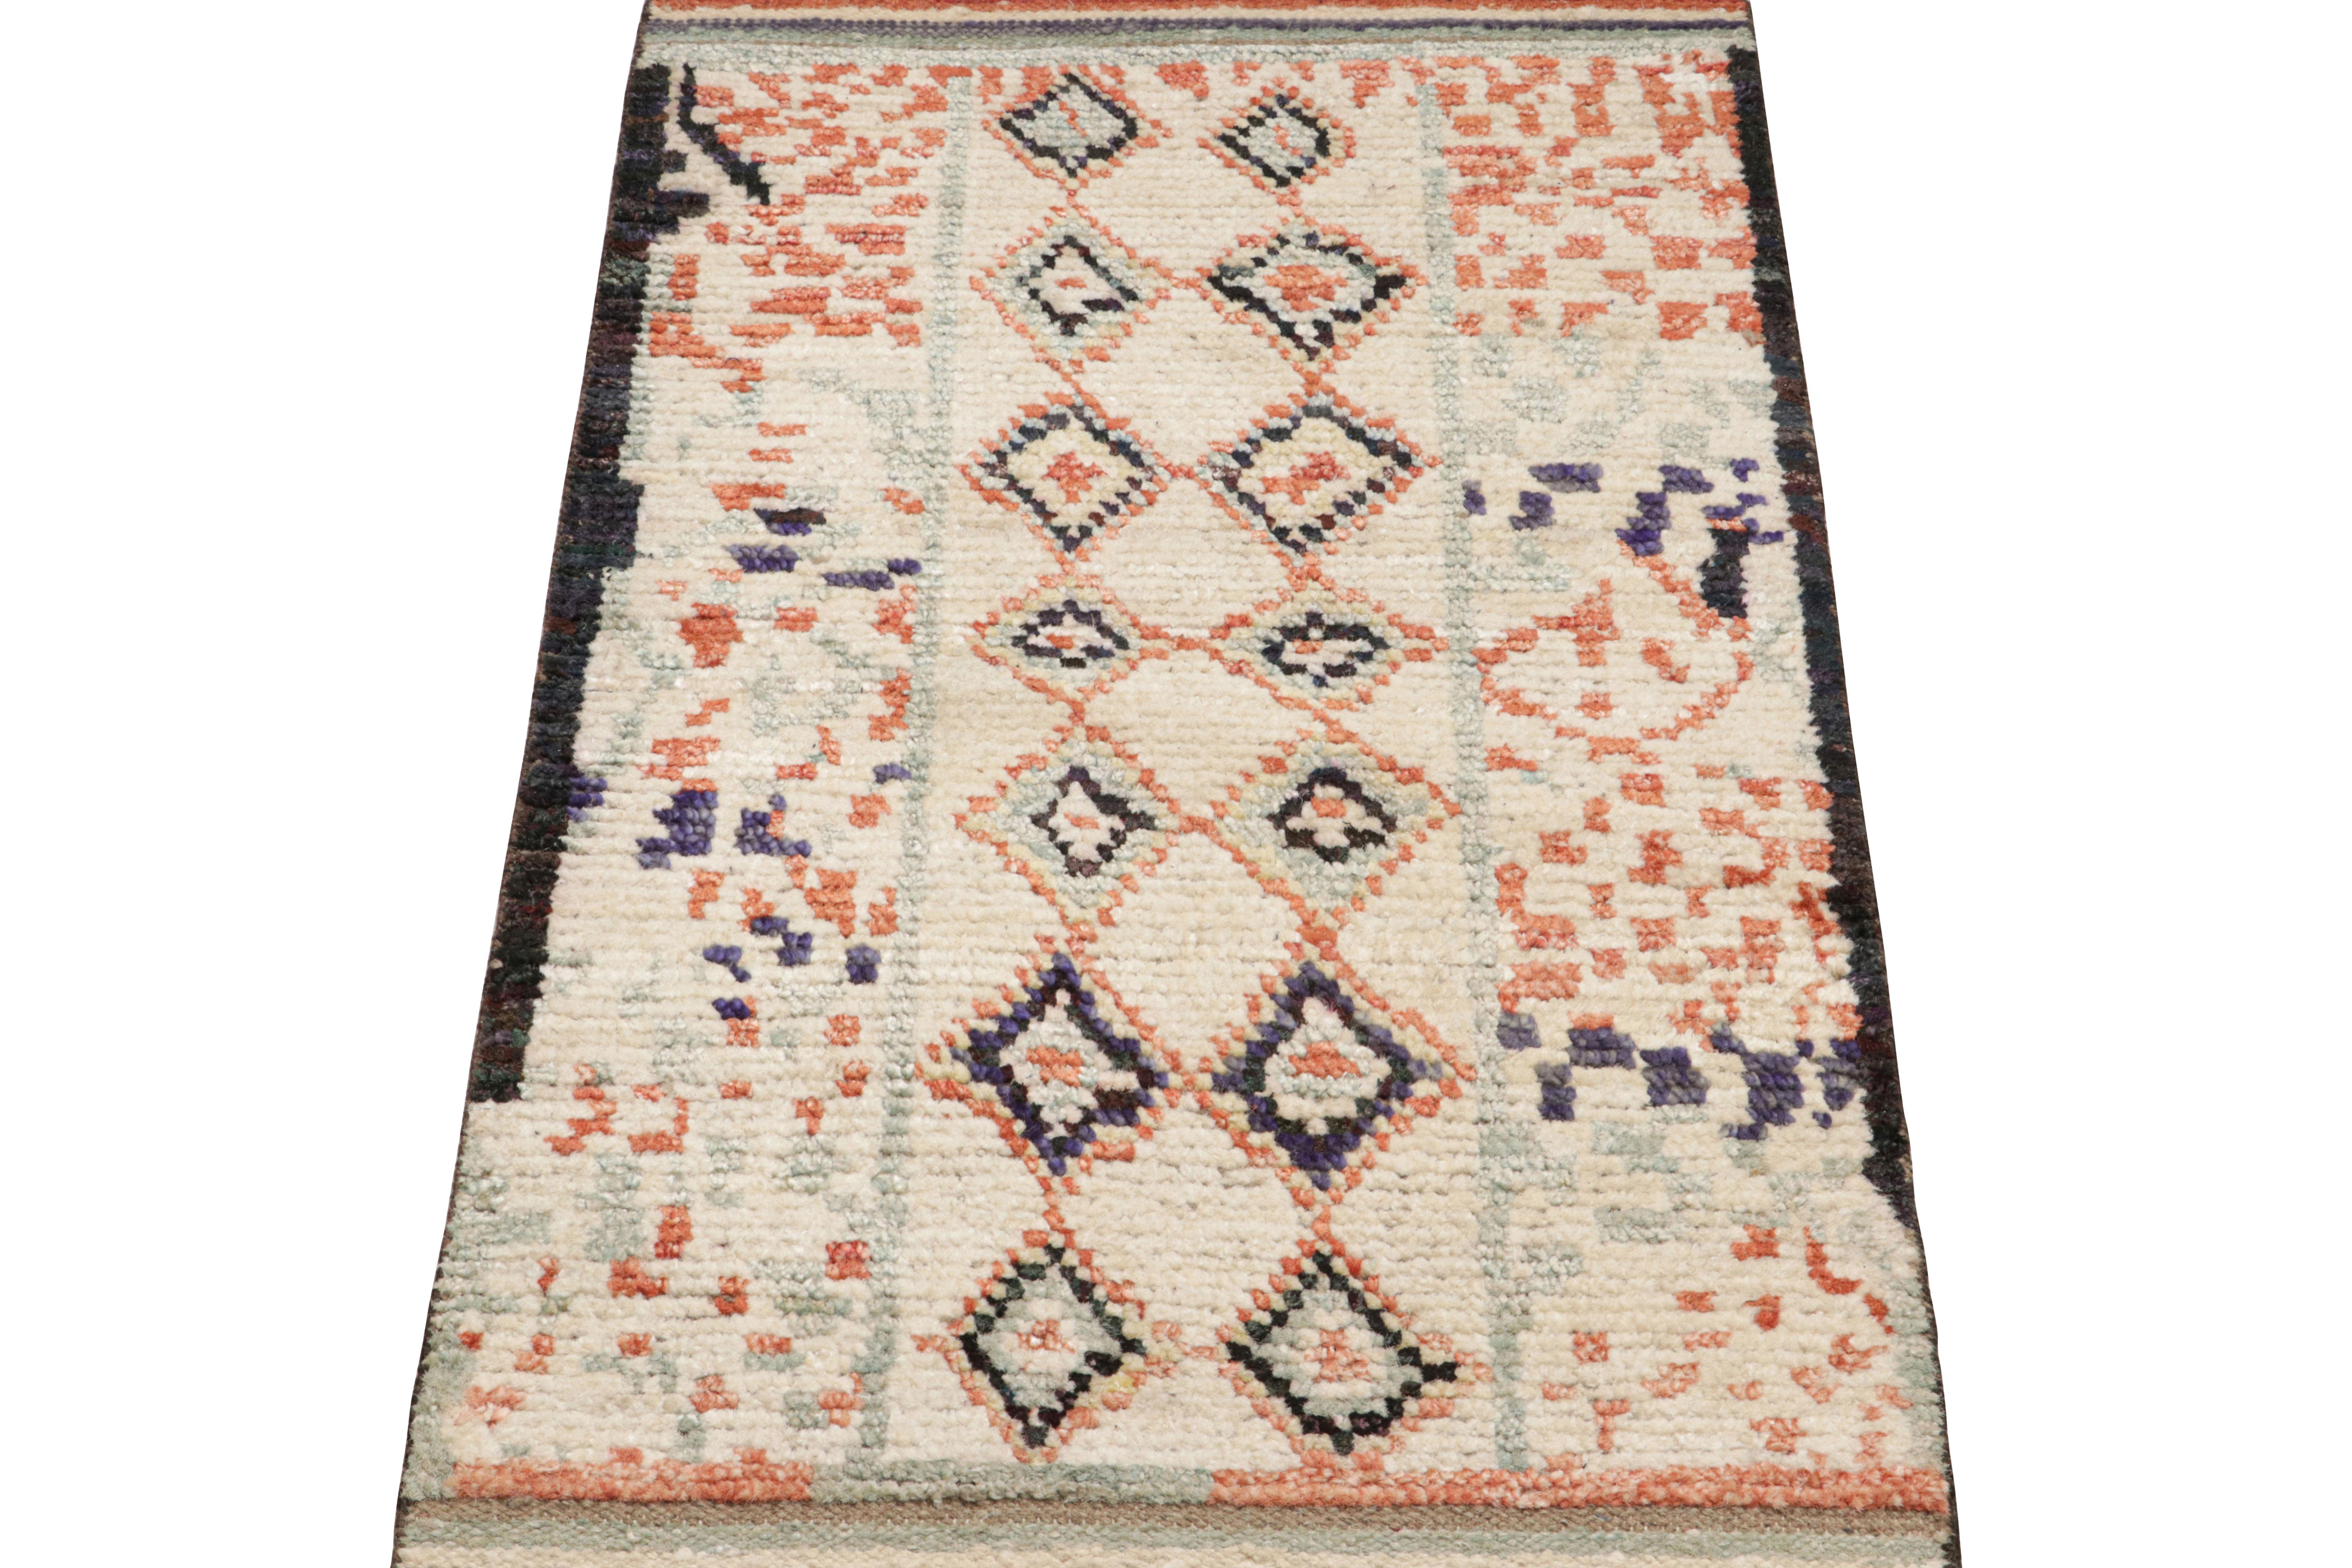 Noué à la main en laine et en soie, ce tapis marocain 2x3 présente des motifs géométriques inspirés des traditions de tissage berbères primitivistes et la même texture nervurée tirant sur les sensibilités boucherouites. 

Sur le Design : 

Les